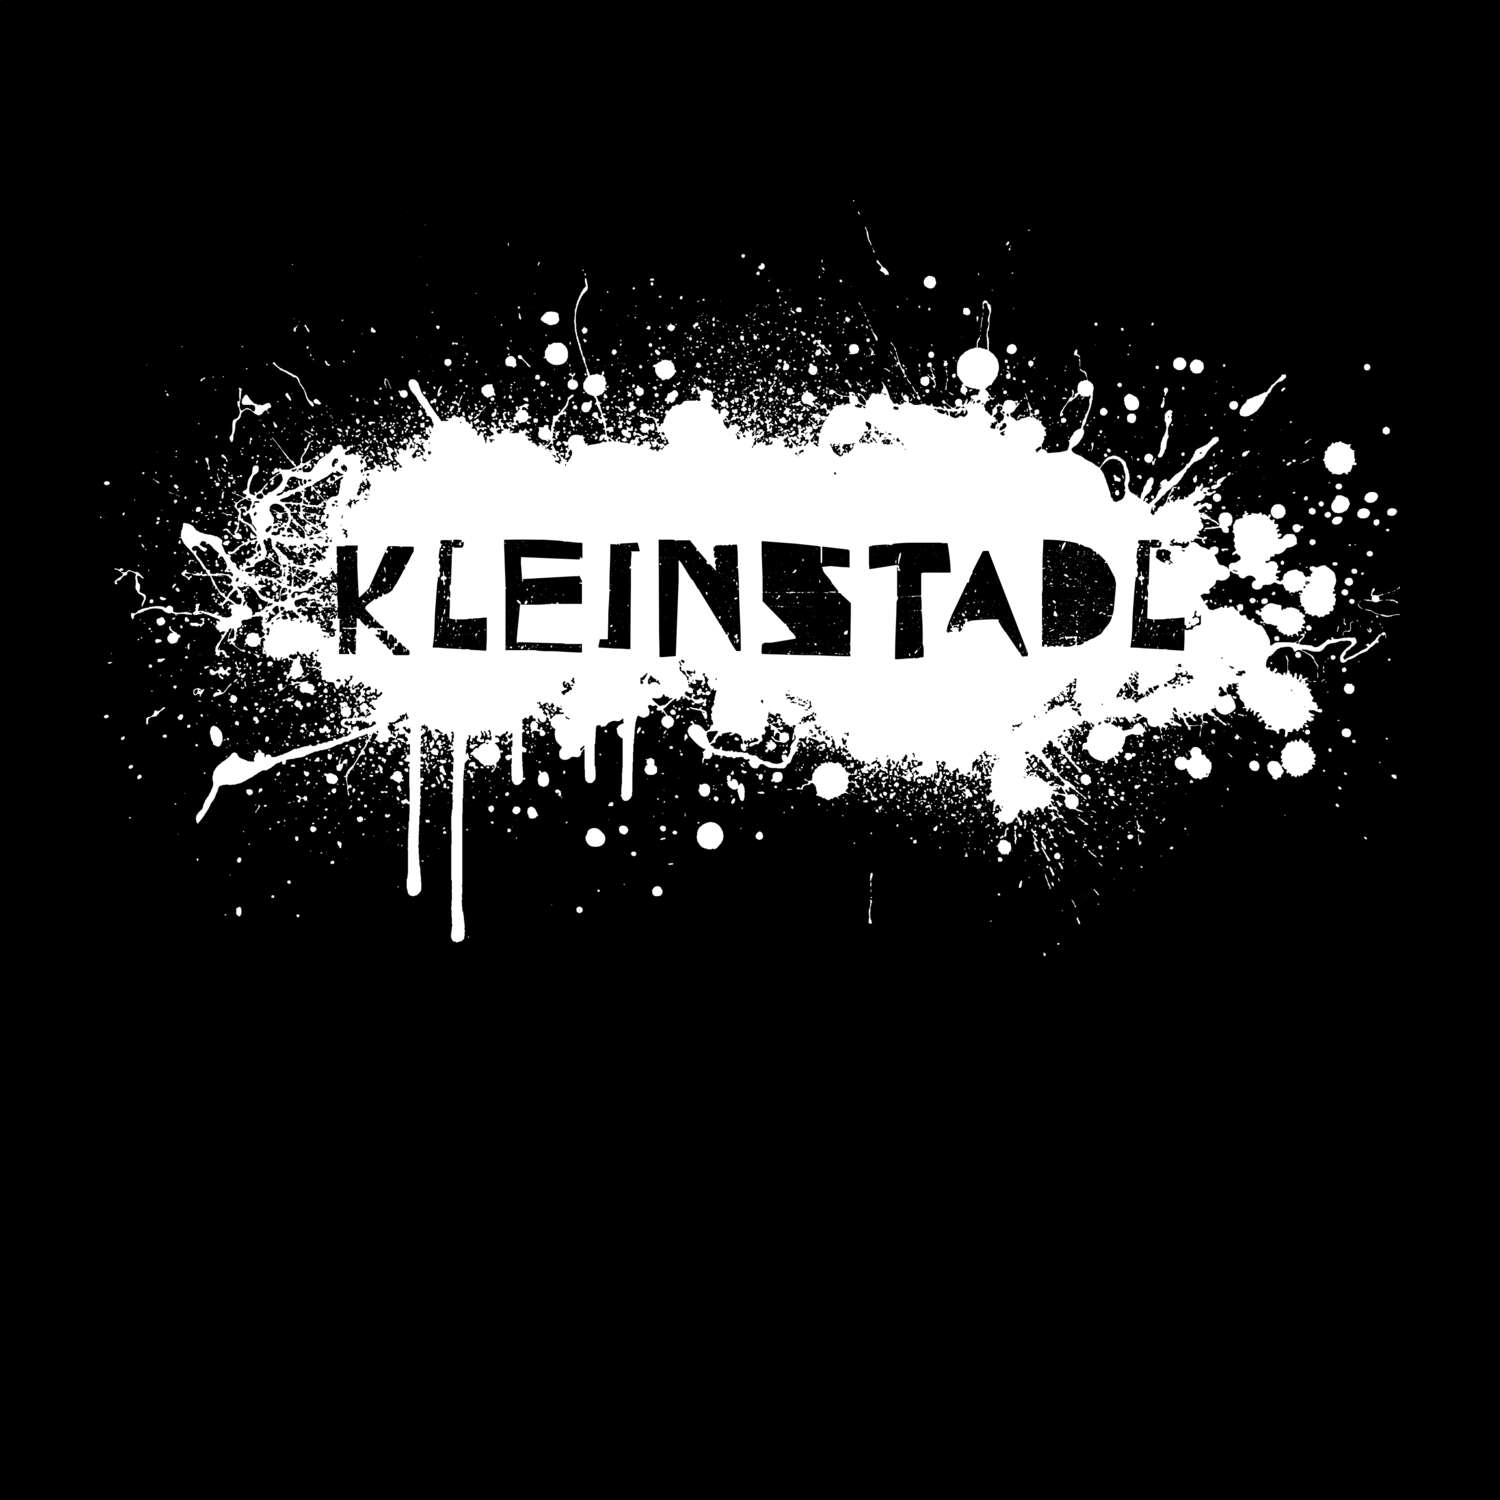 Kleinstadl T-Shirt »Paint Splash Punk«